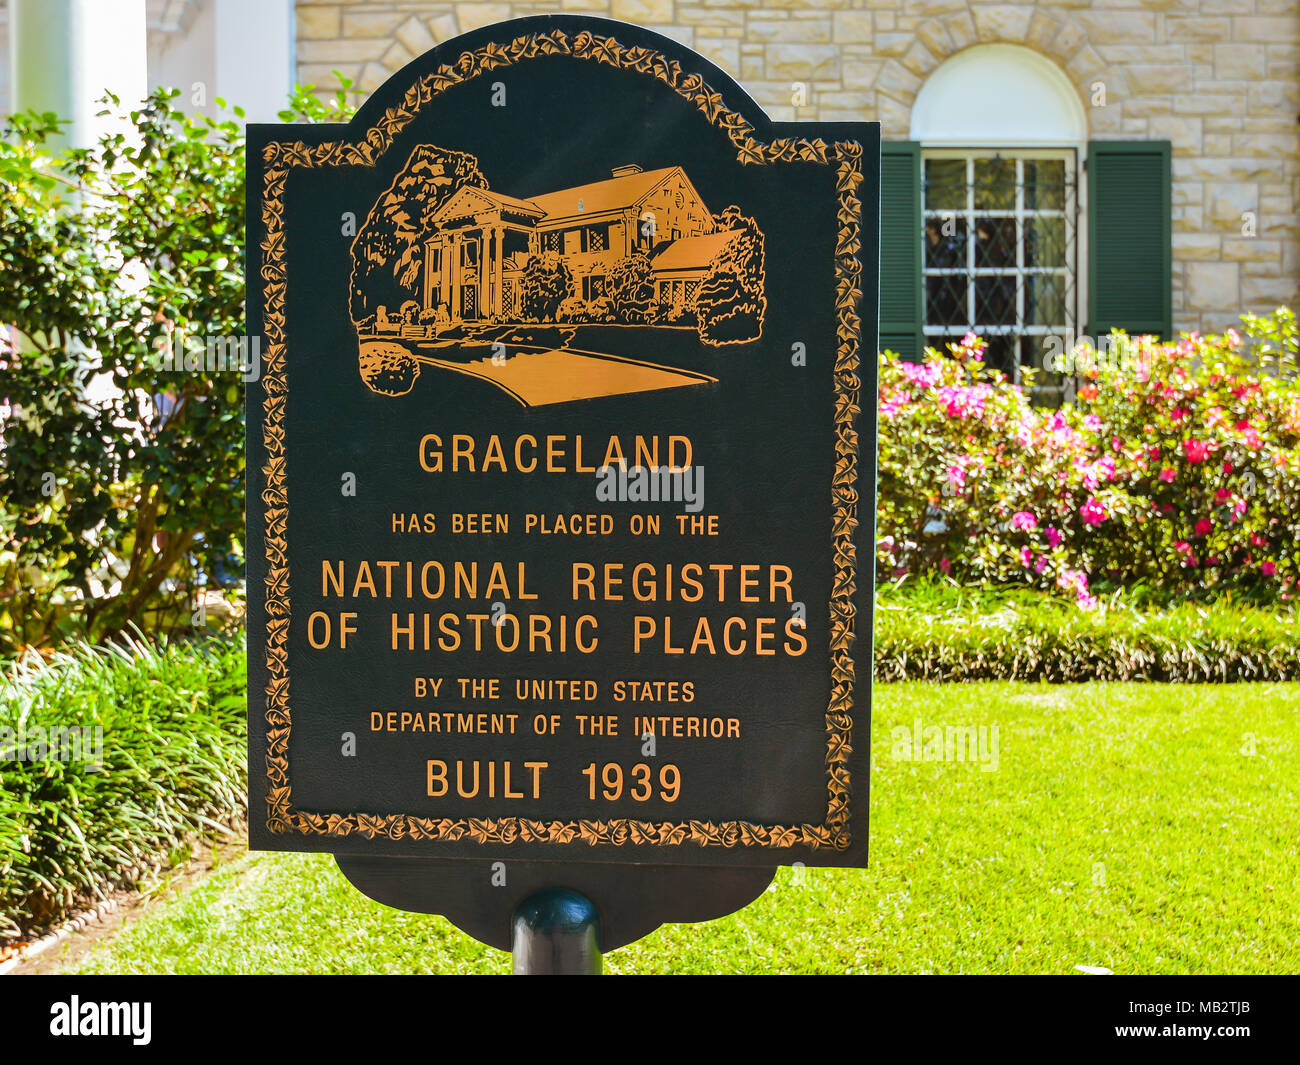 Memphis, TN - Marqueur devant Elvis Presley's Graceland Mansion indiquant que la propriété est inscrite au Registre national des lieux historiques. Banque D'Images